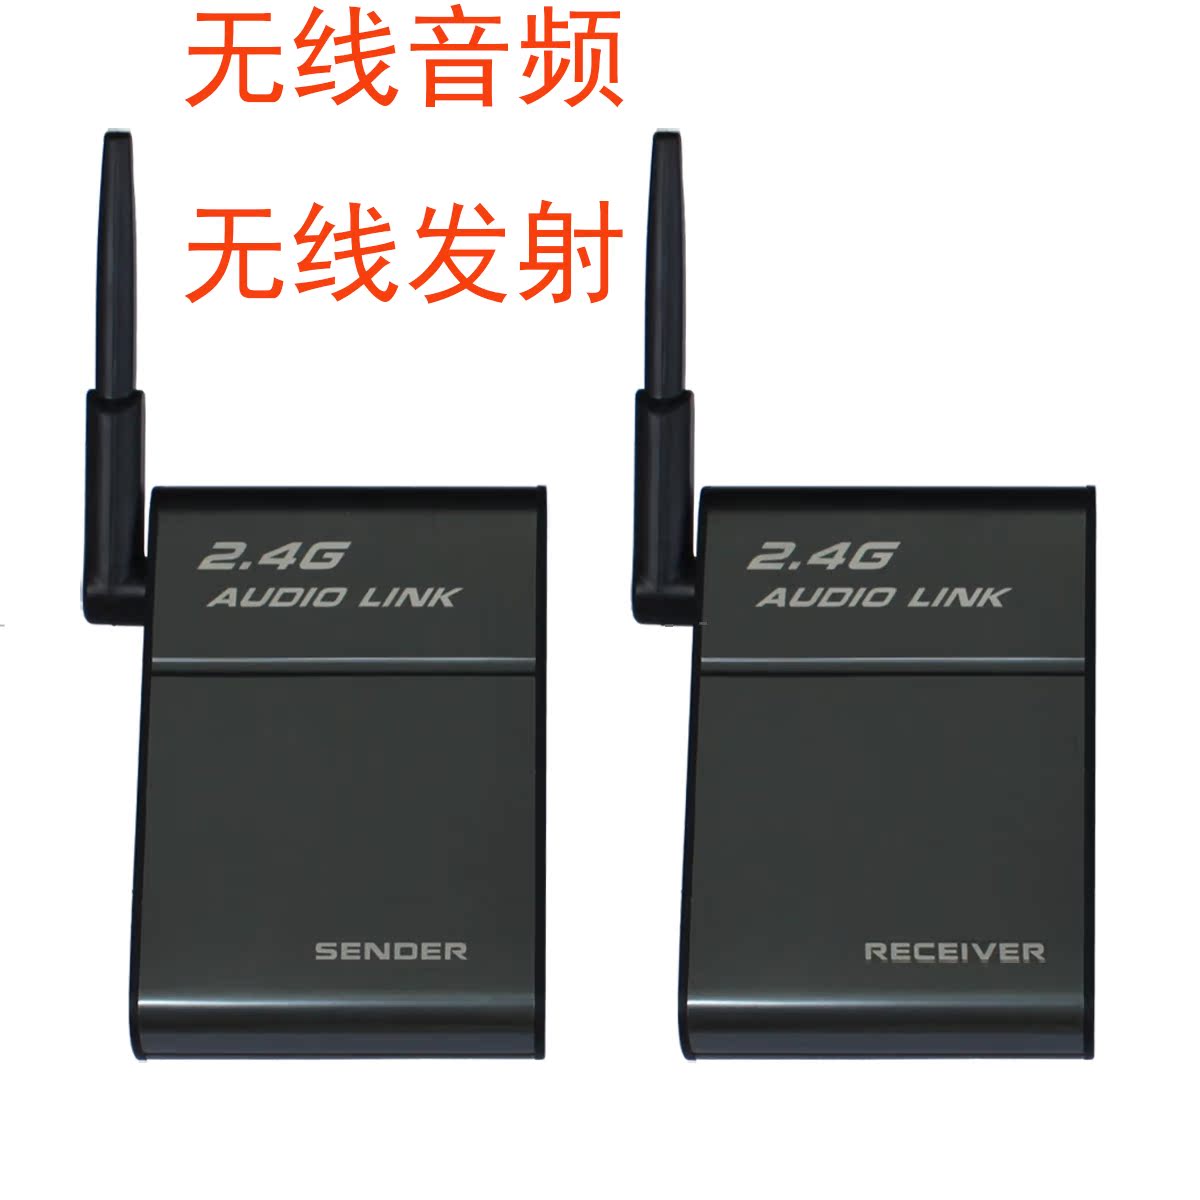 高保真无损高音质 2.4G无线音频传输器 无线hifi音箱传输设备